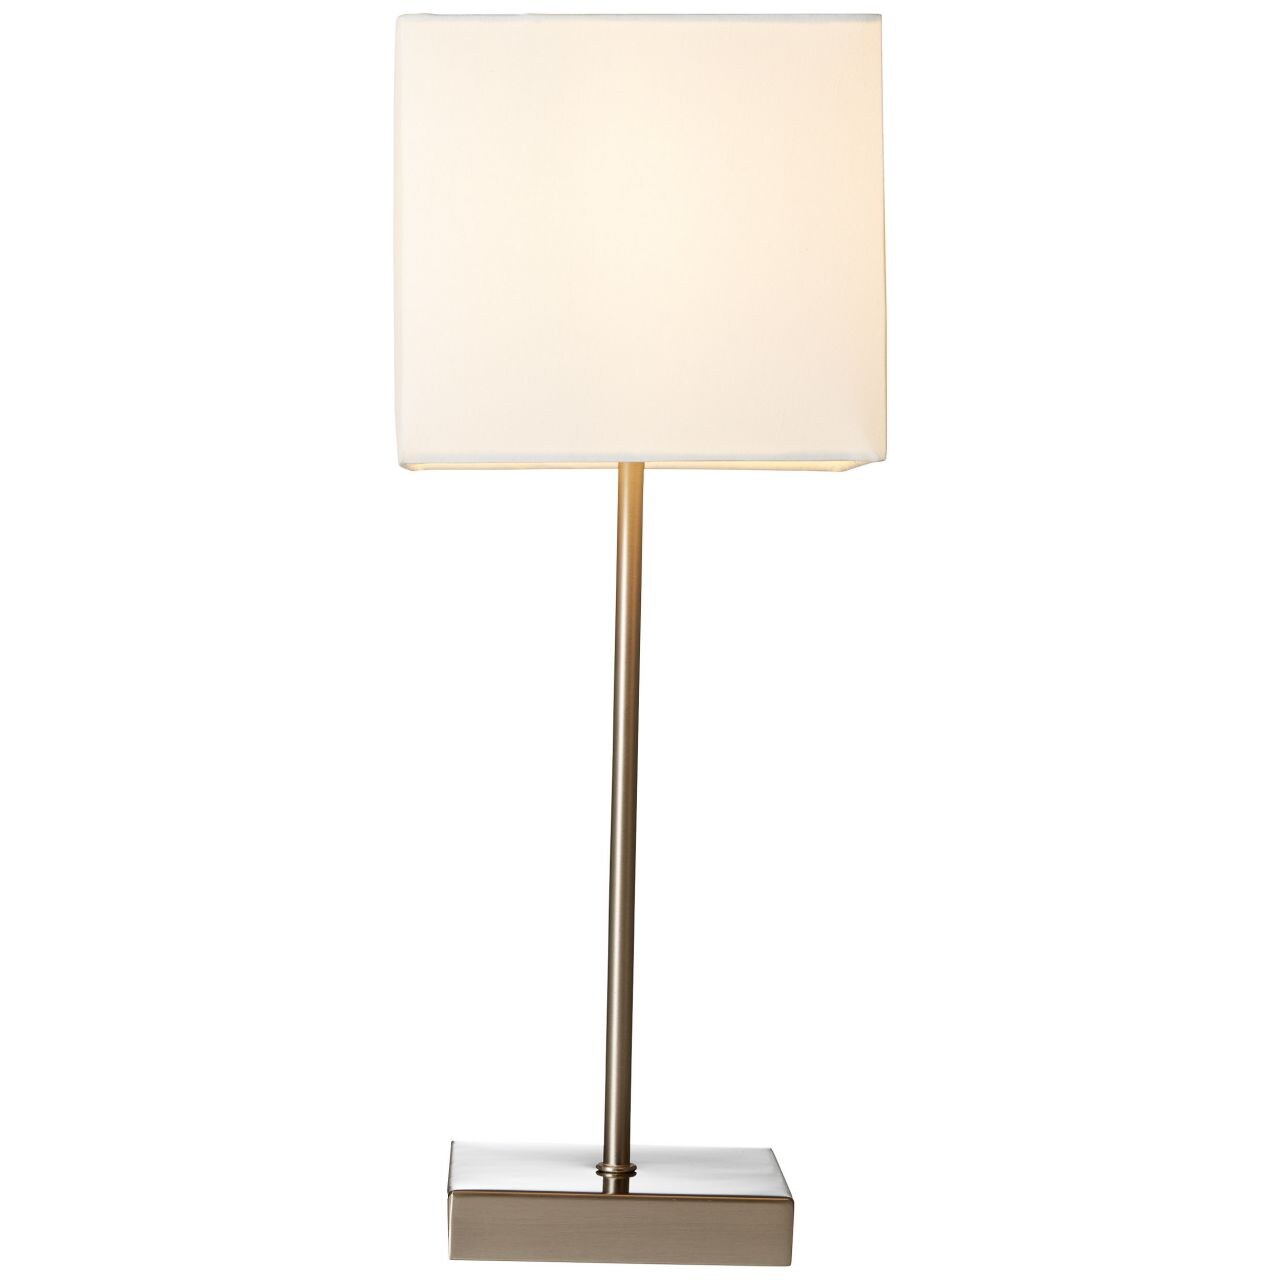 BRILLIANT Lampe Aglae Tischleuchte Touchschalter weiß   1x D45, E14, 40W, geeignet für Tropfenlampen (nicht enthalten)  